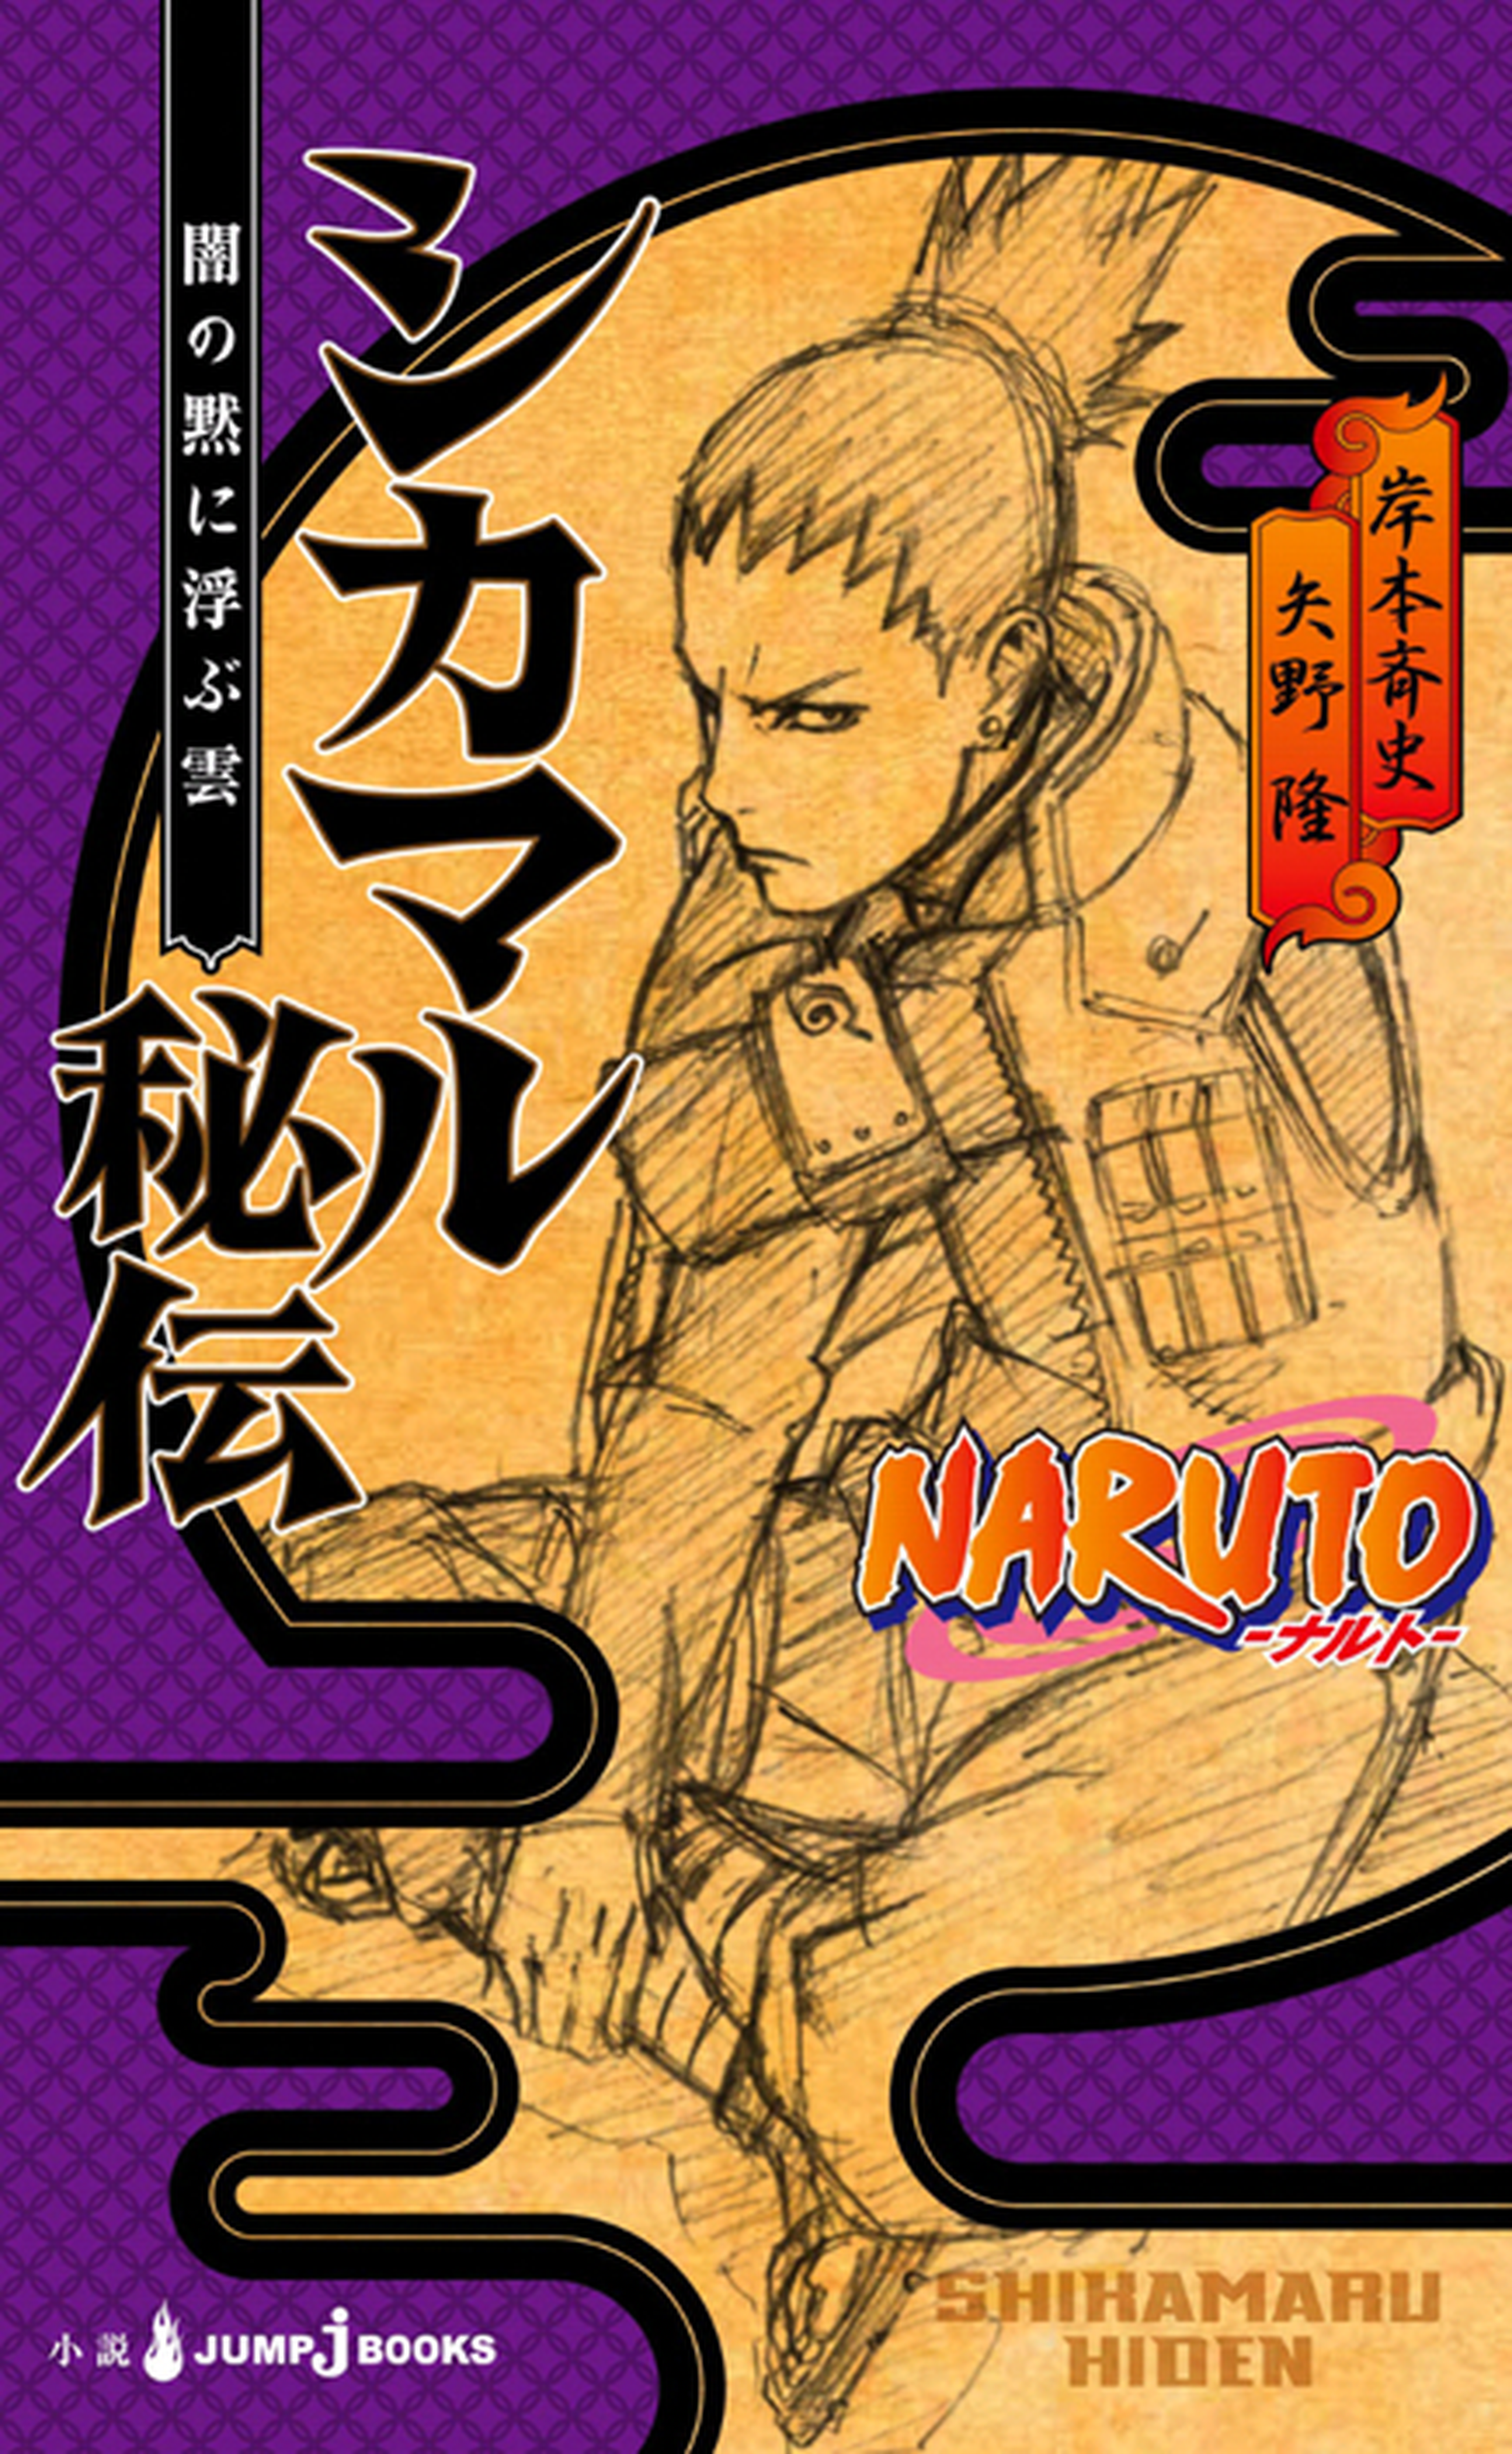 Naruto y sus spin-offs